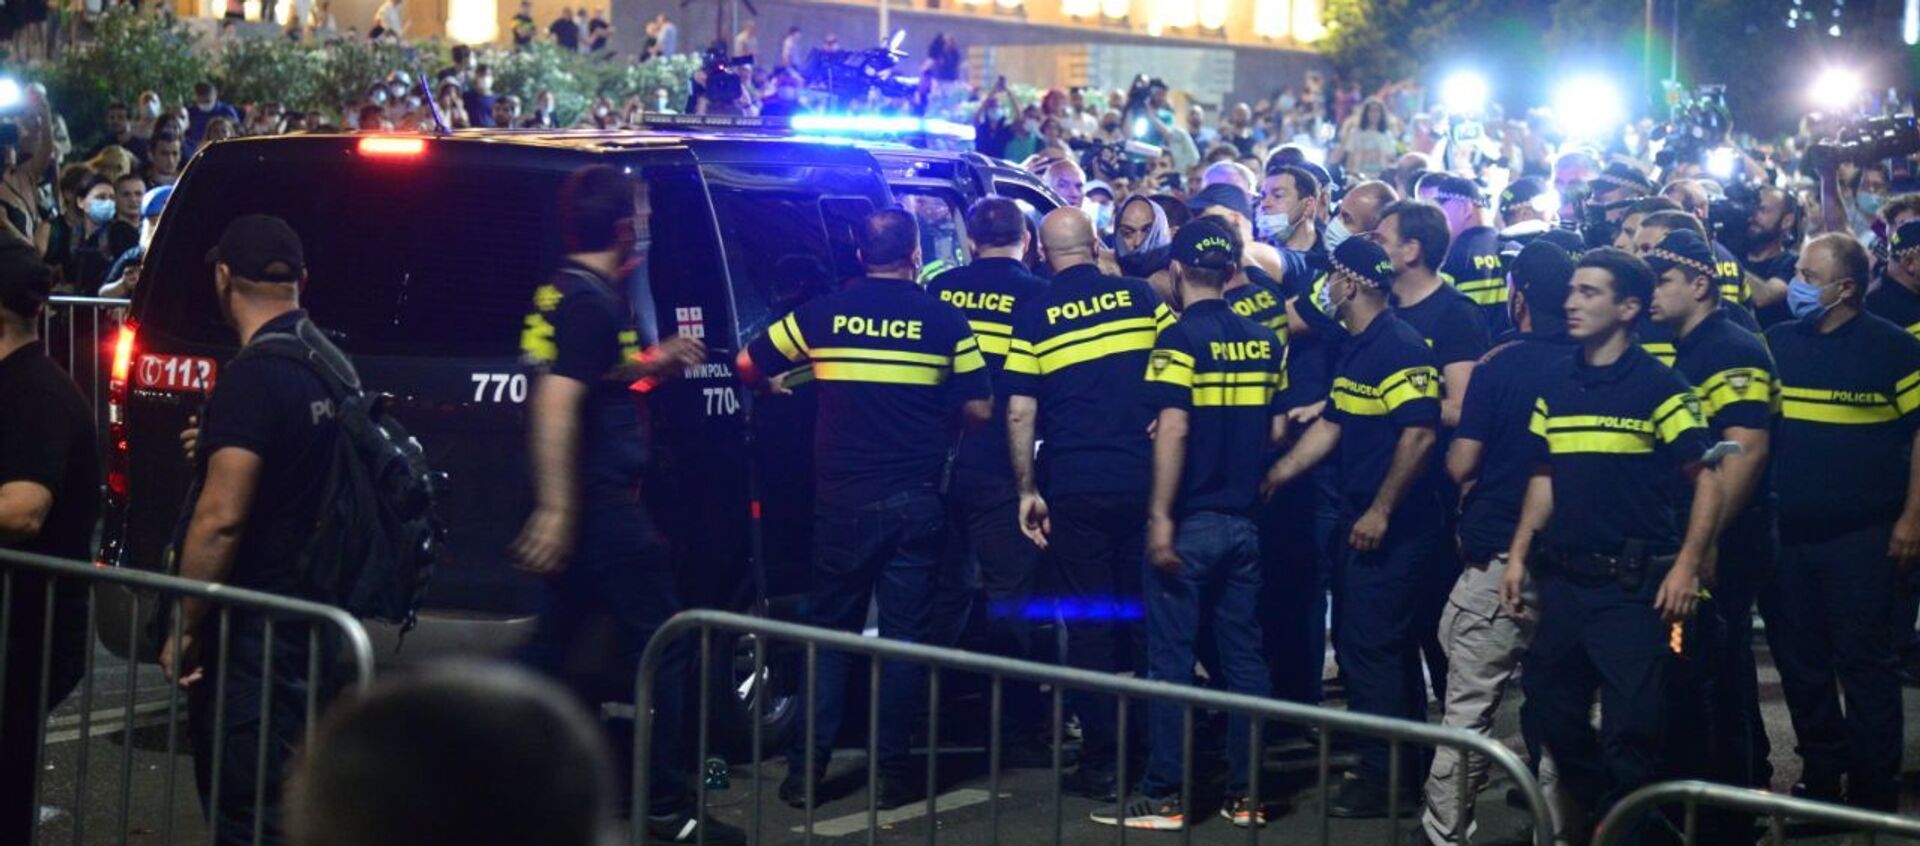 Противостояние у парламента Грузии 6 июля 2021 года. Полицейские задерживают протестующих - Sputnik Грузия, 1920, 07.07.2021